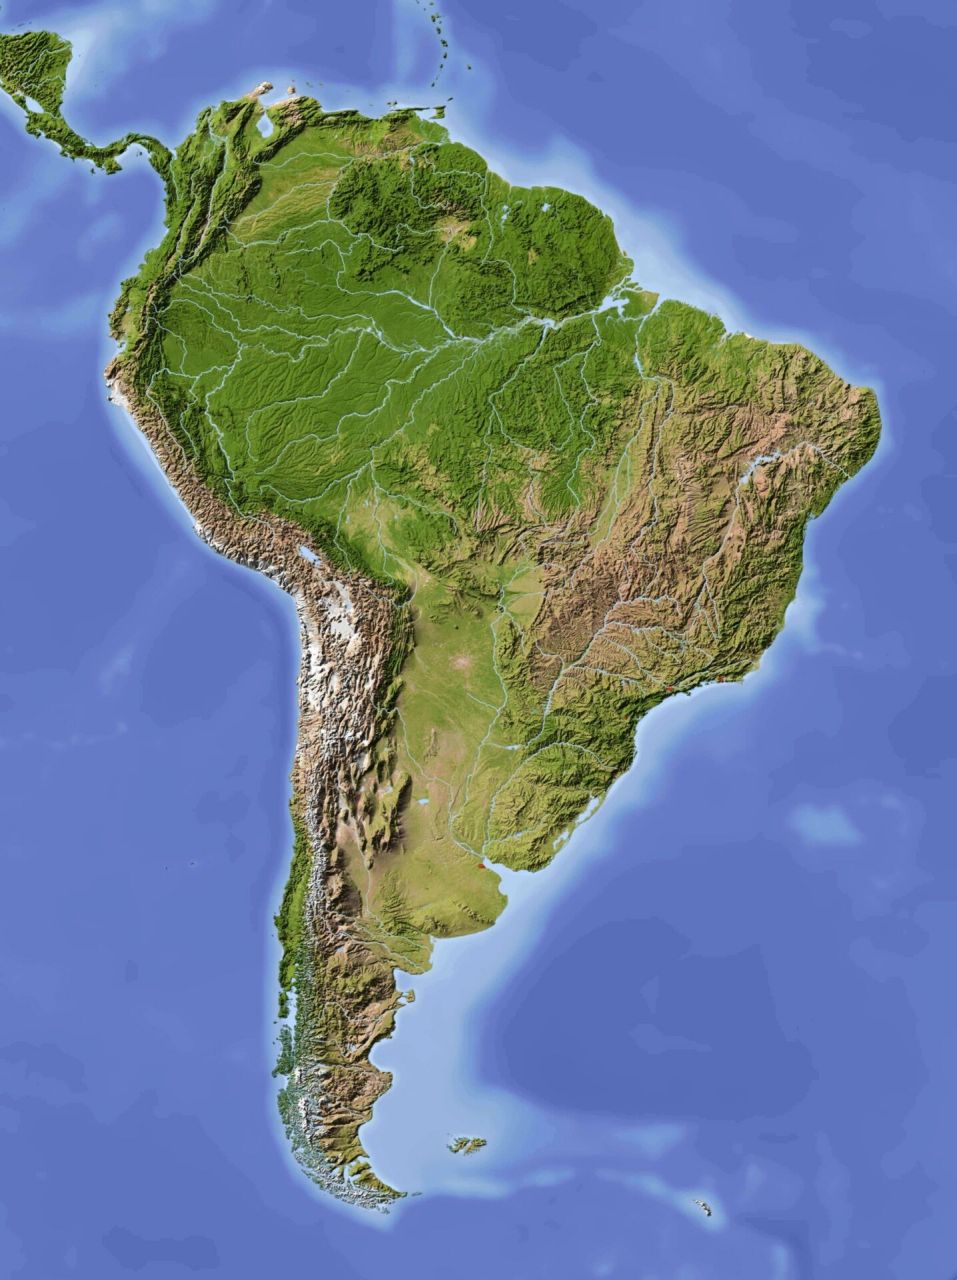 南美洲地形剖面图图片